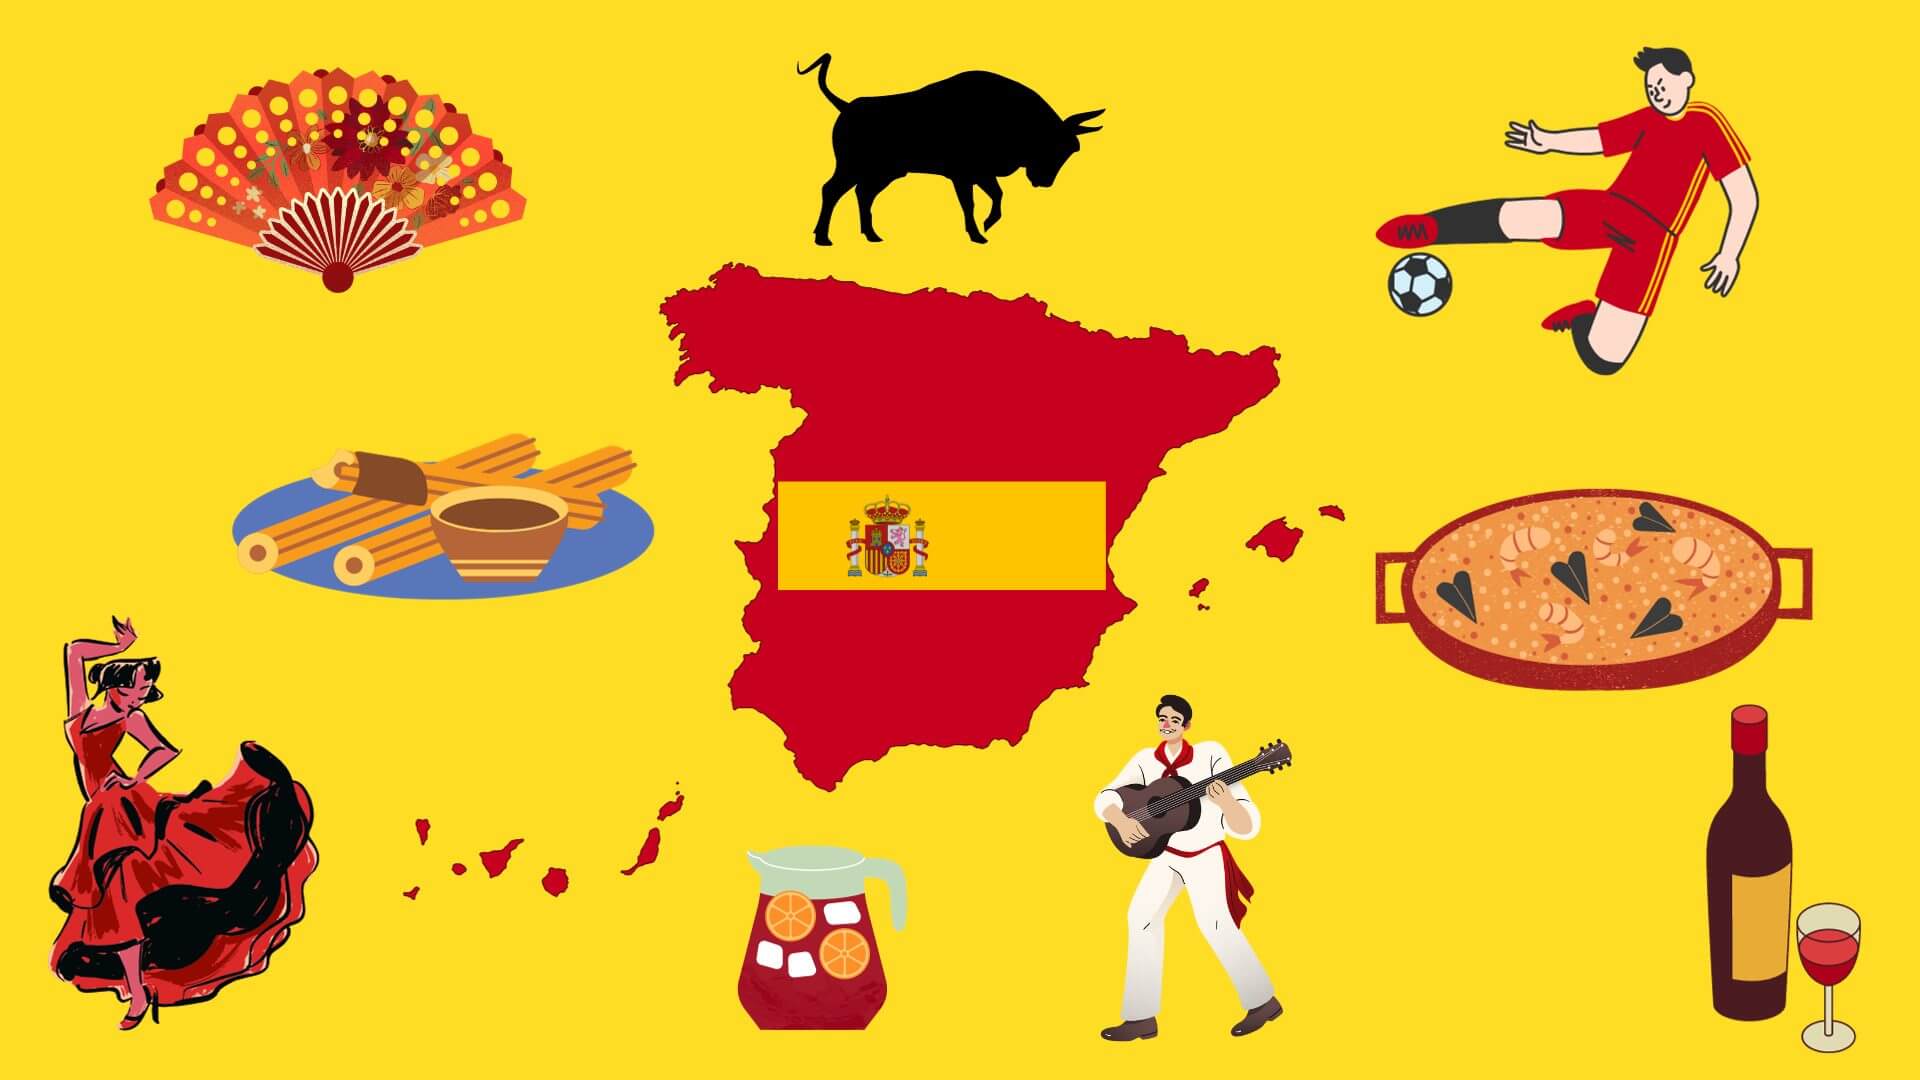 Instituto Hispánico de Murcia - Spanje: 20 redenen om het beste land ter wereld te zijn